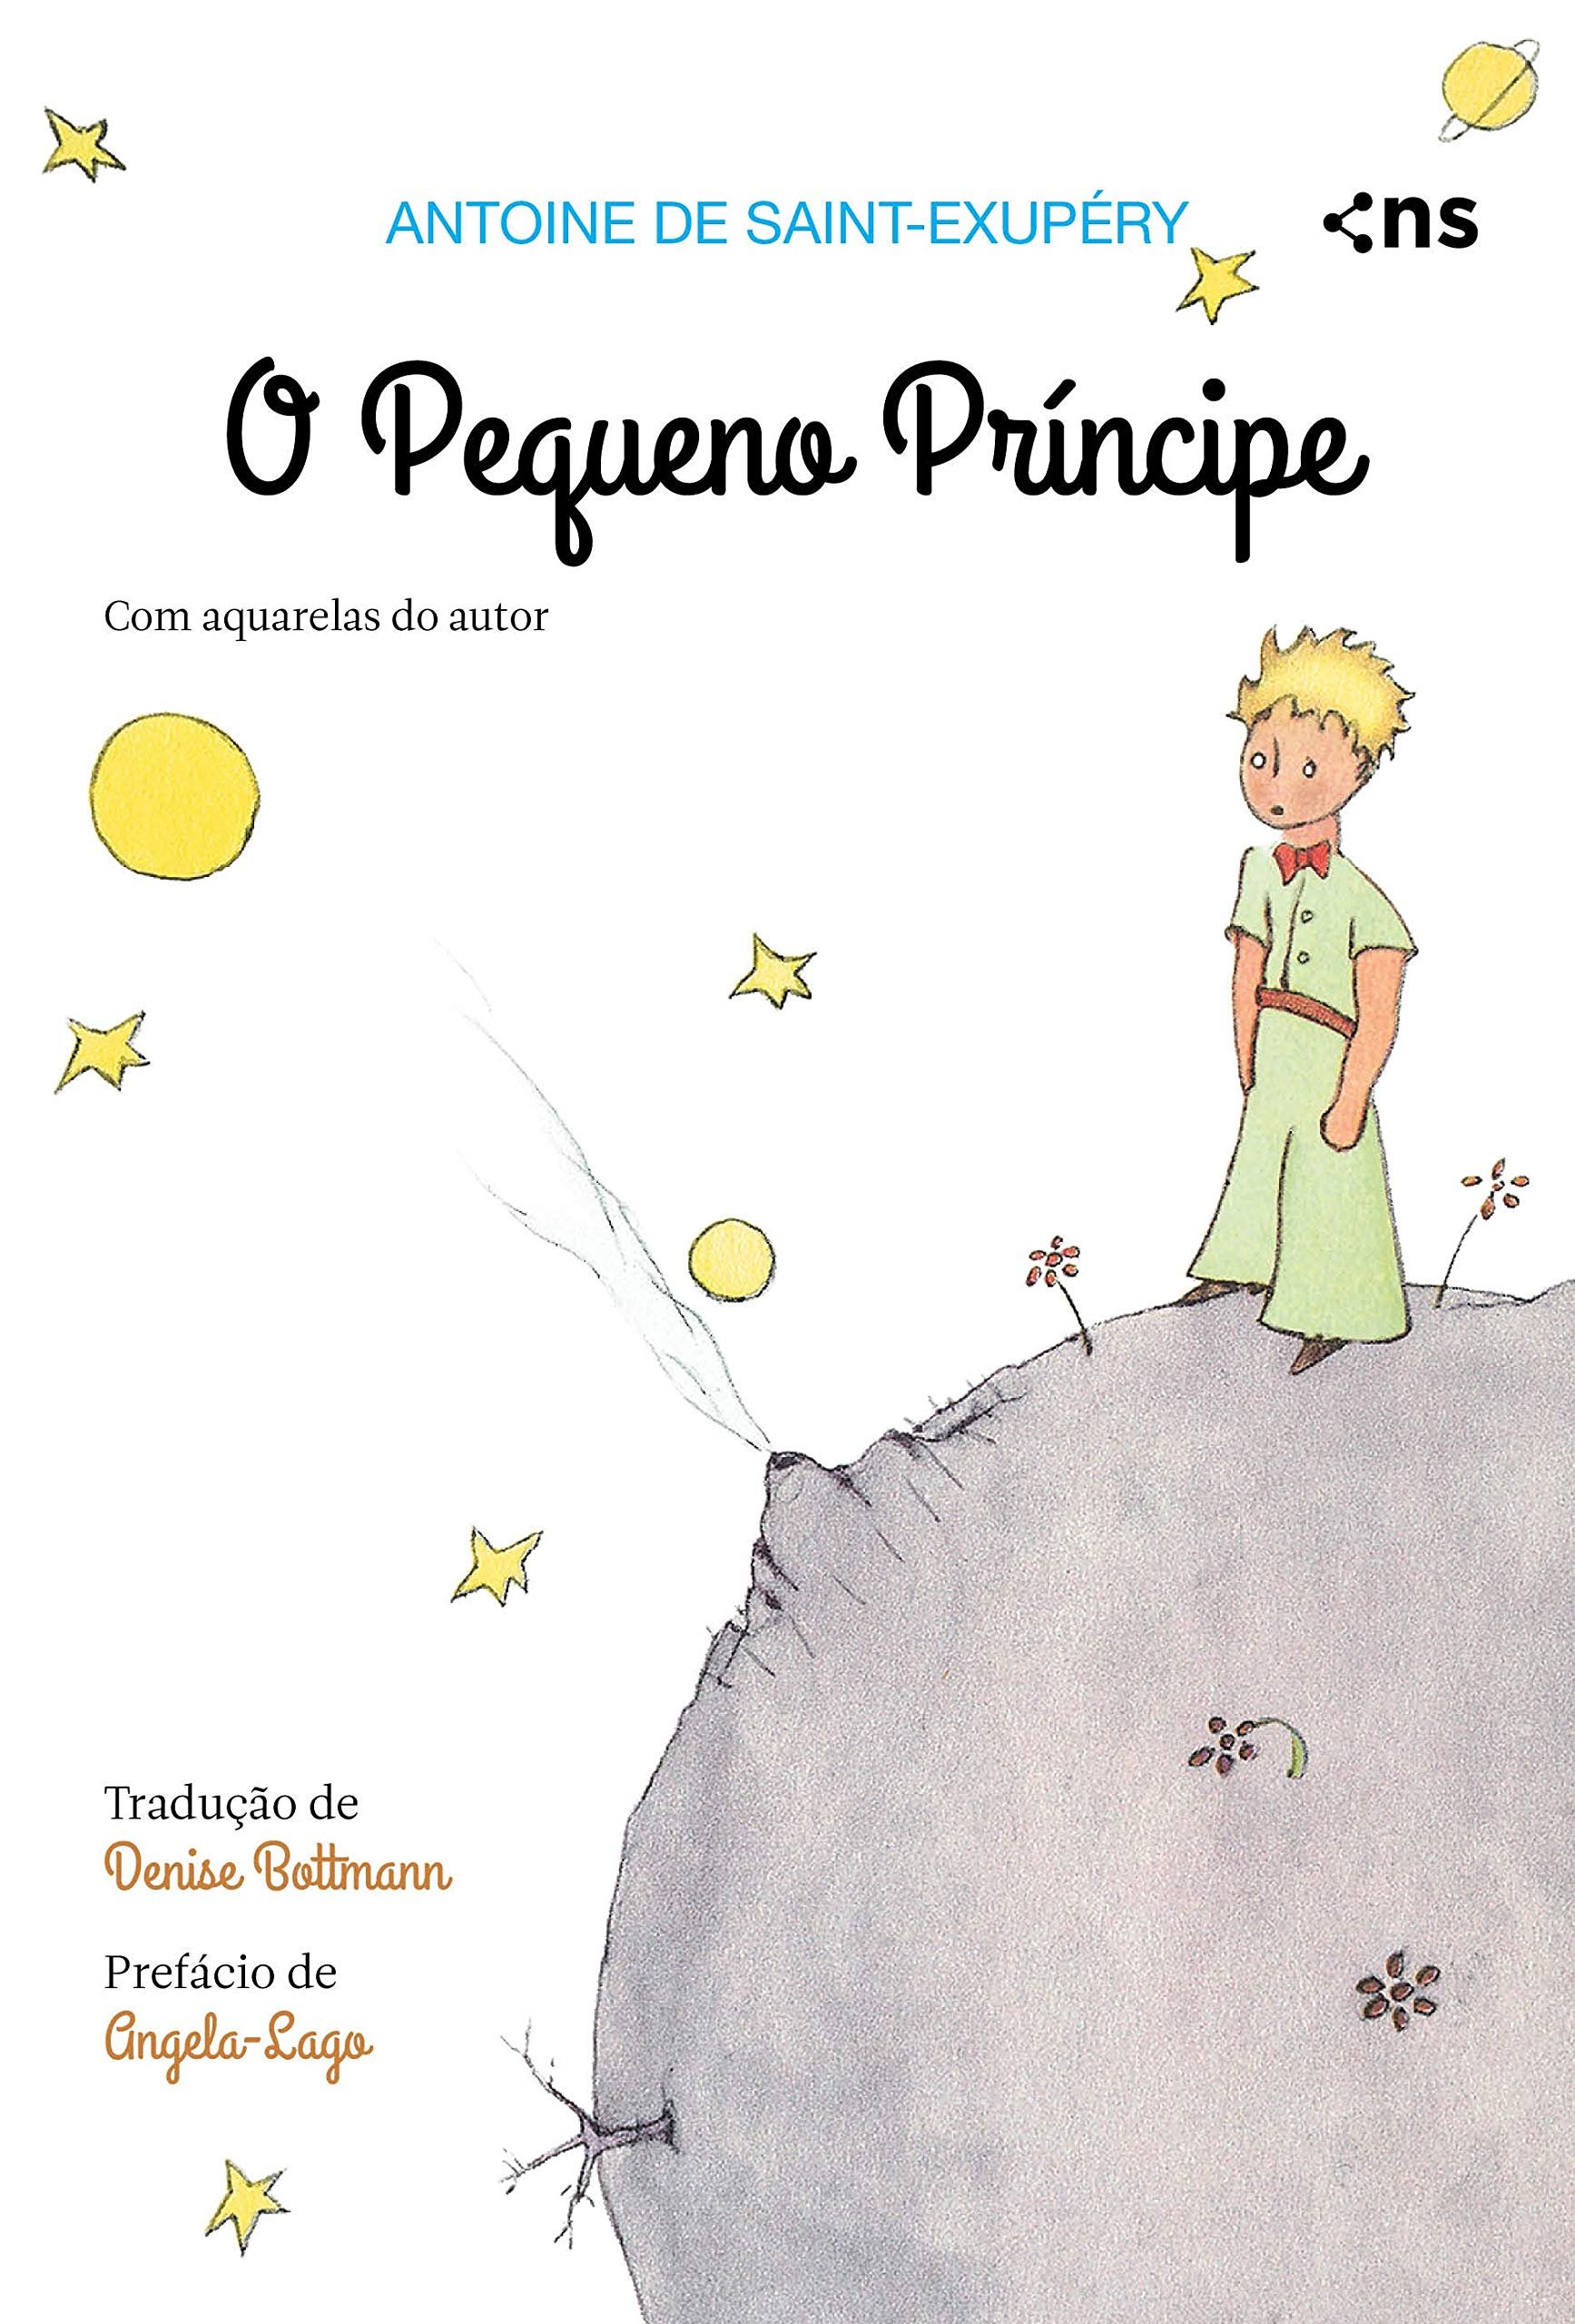 Capa do livro 'O Pequeno Príncipe'.